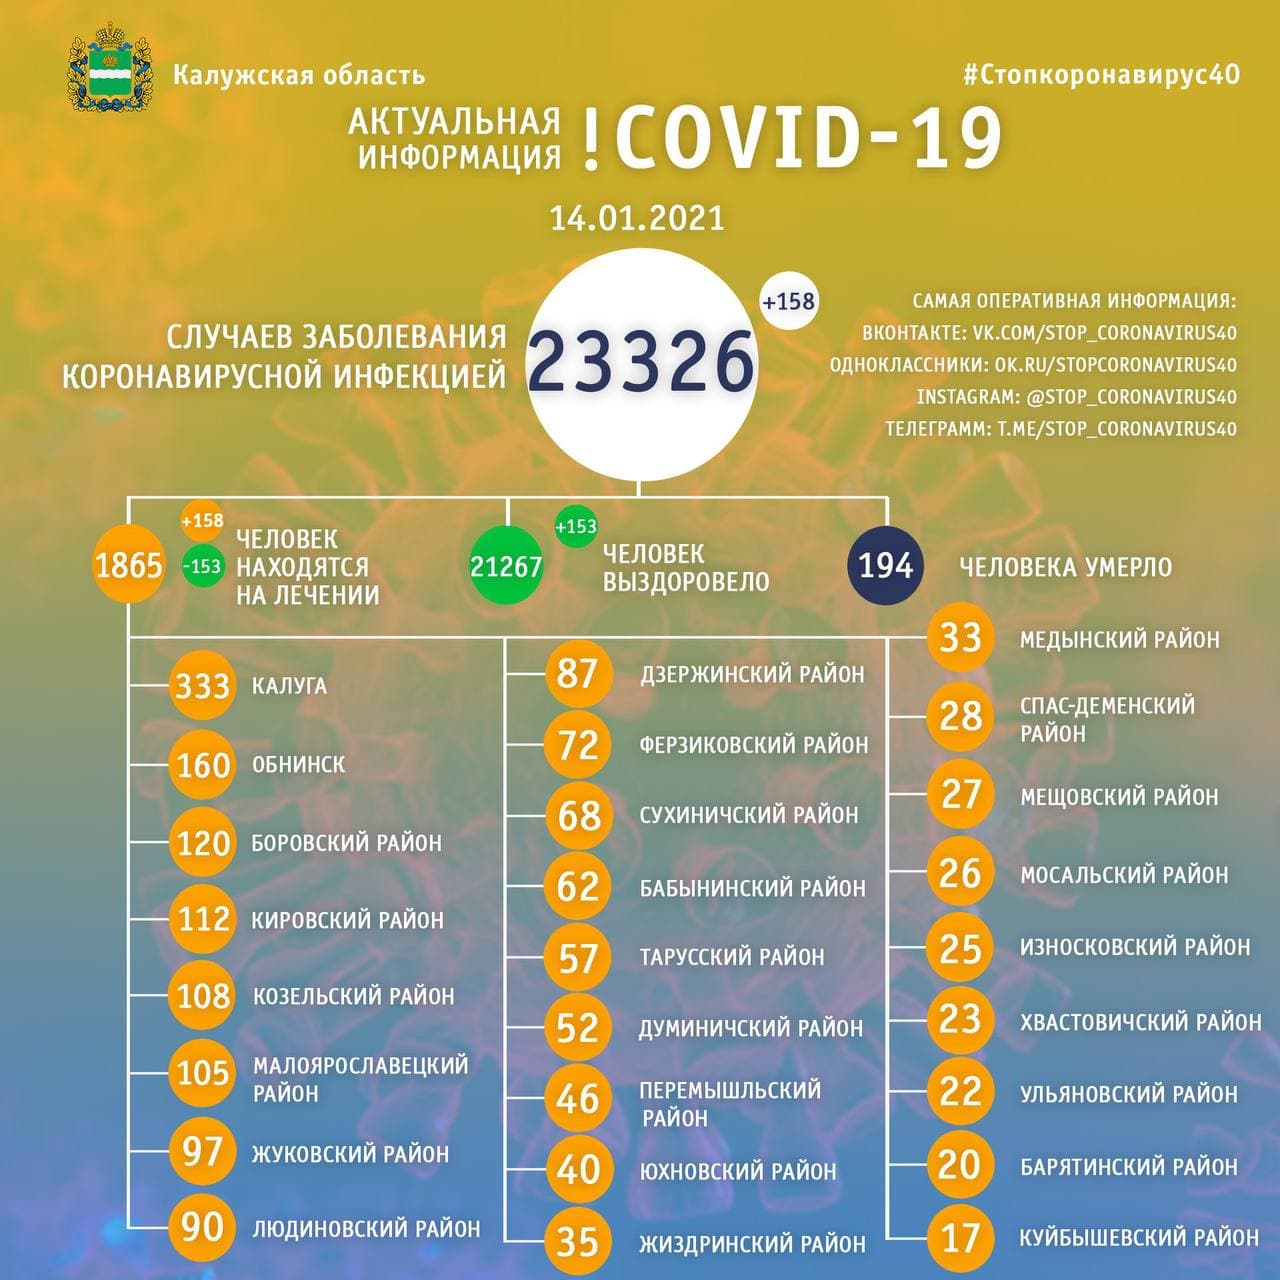 Официальная статистика по коронавирусу в Калужской области на 14 января 2021 года.